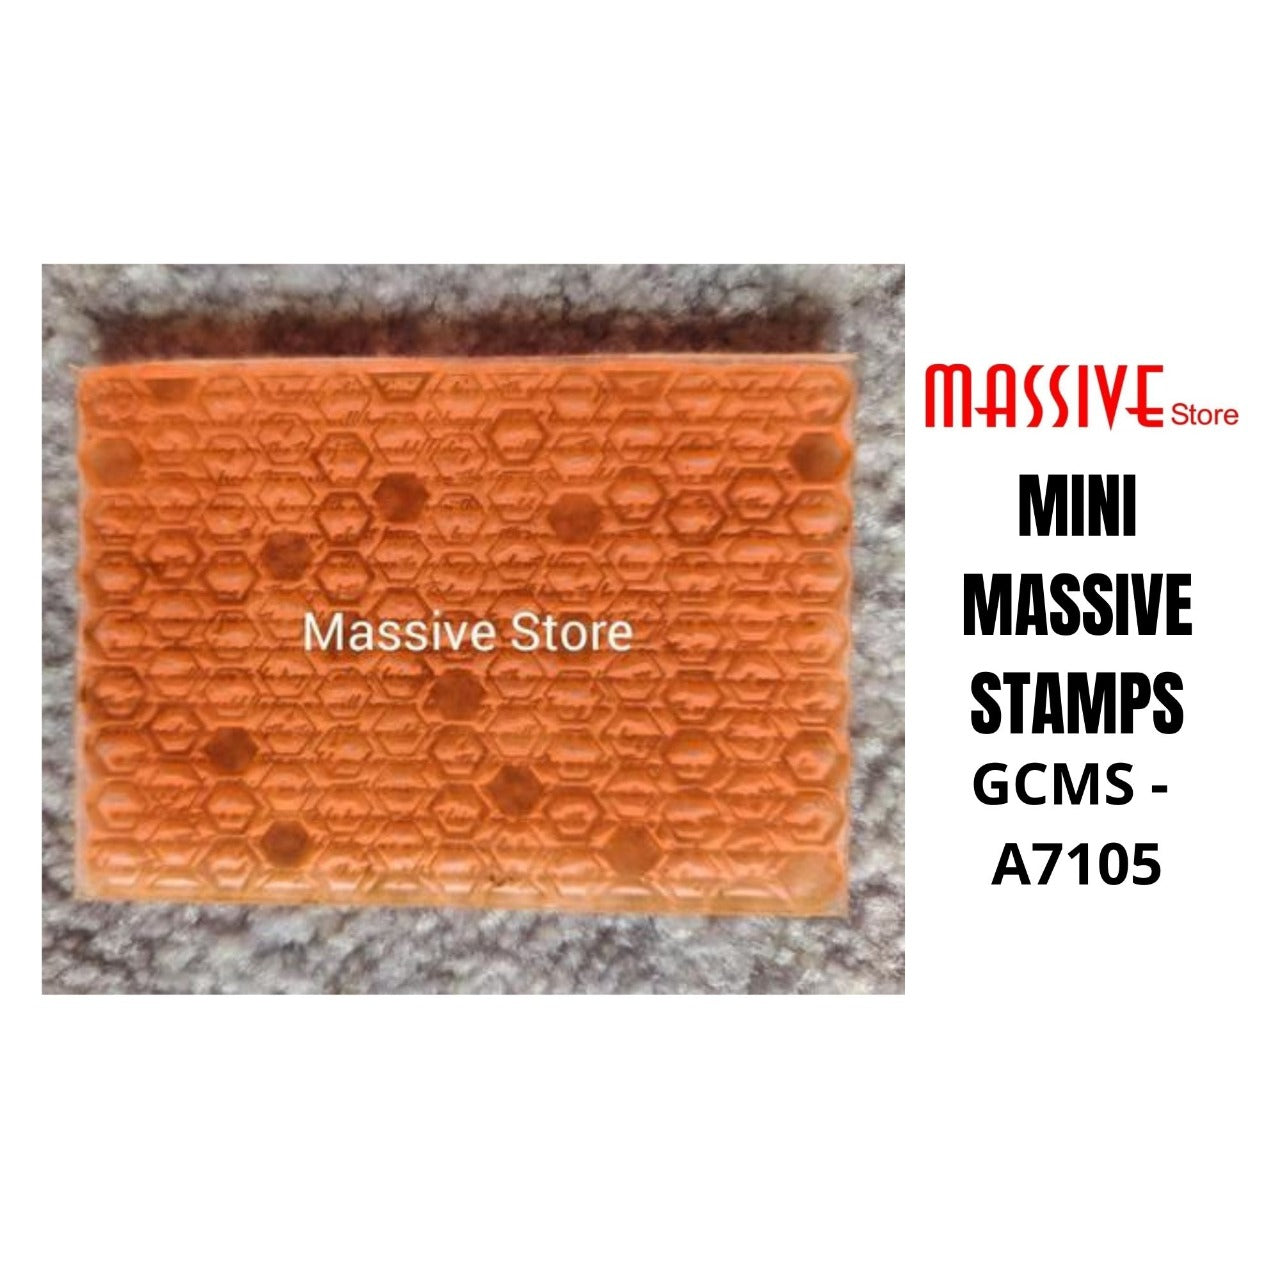 Hexa Mixed Media Stamp (GCMS A7105) - Growing Craft - Best craft Supplies